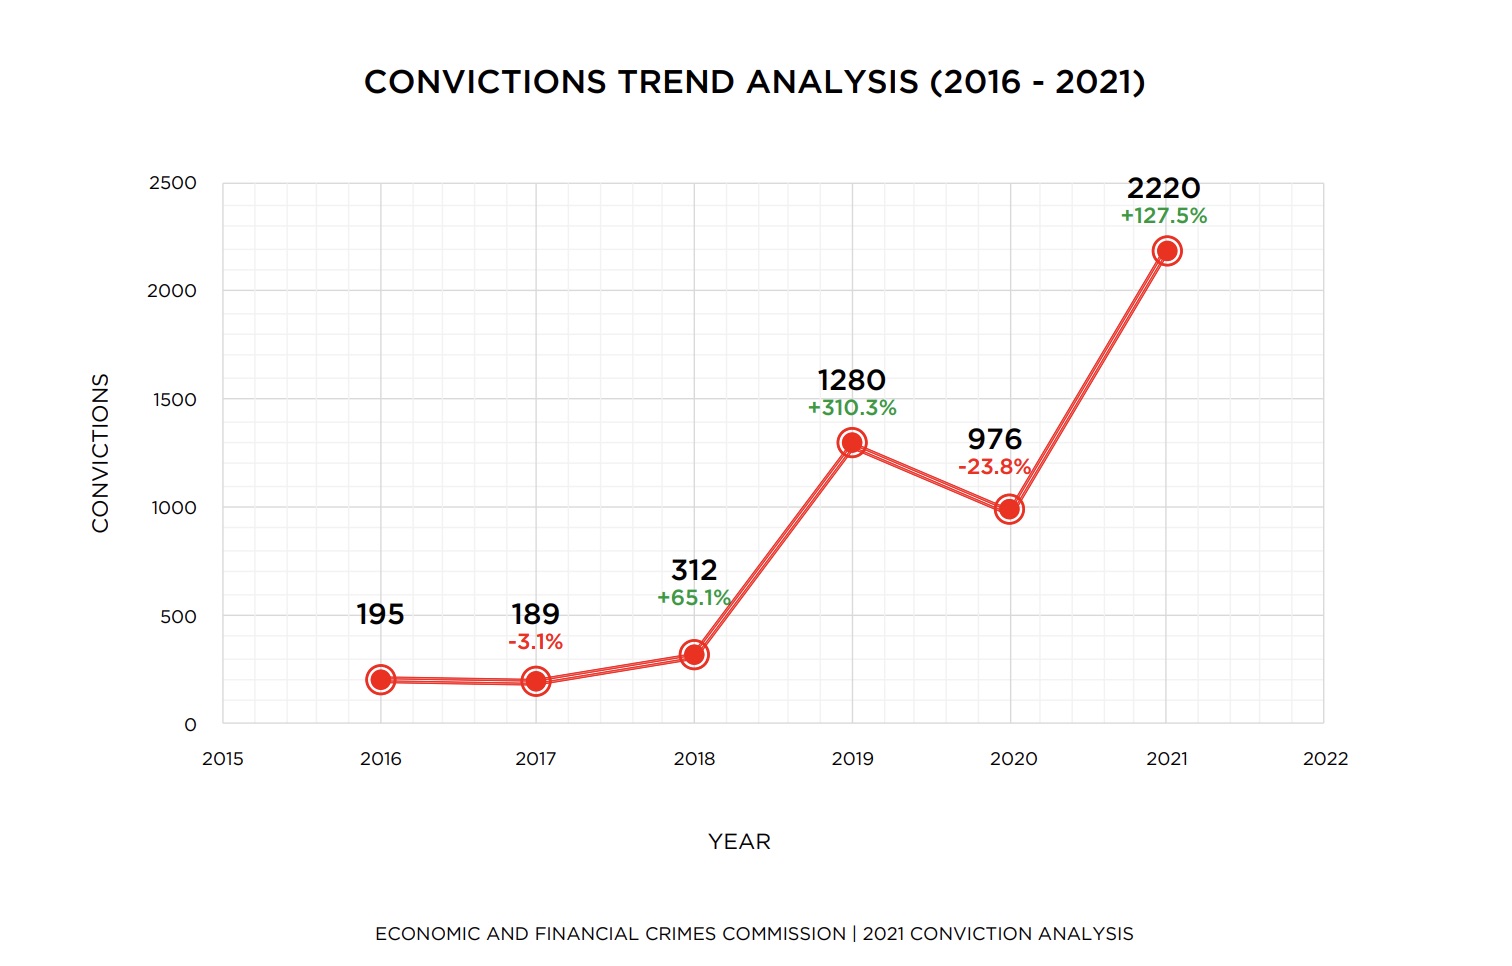 EFCC conviction trend analysis